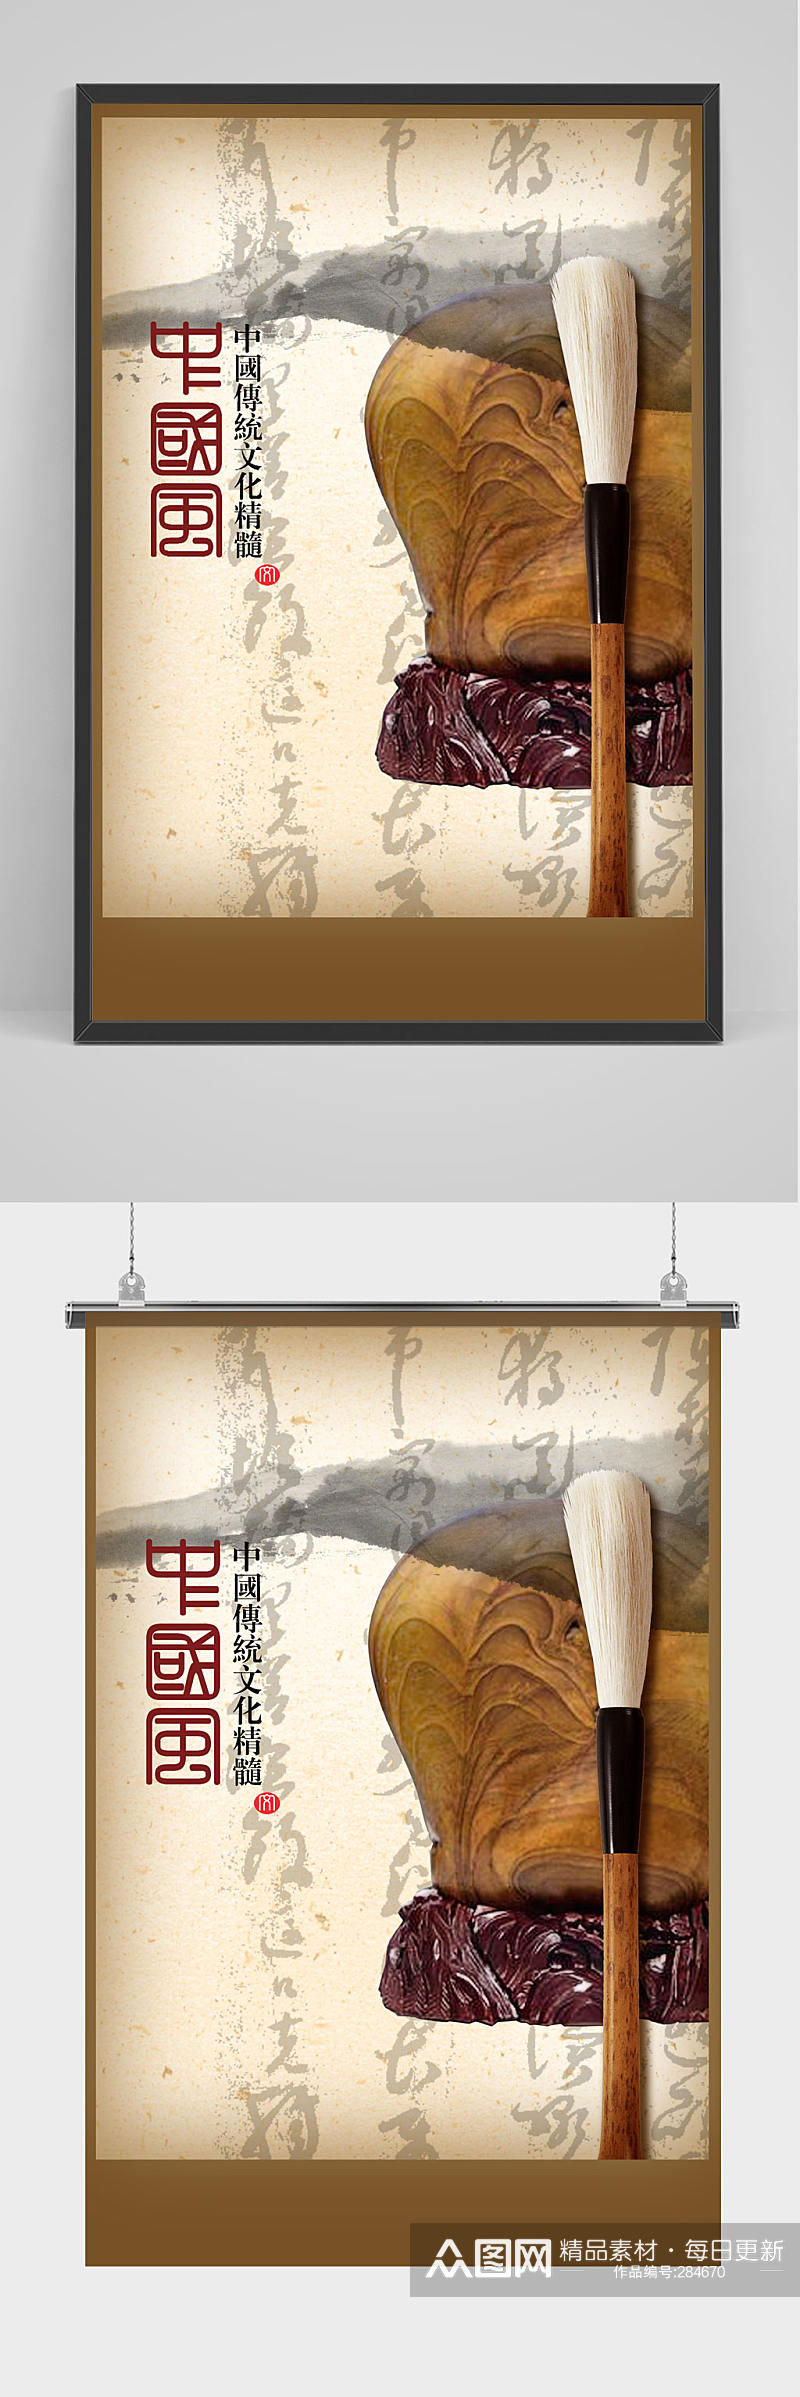 中国风传统文化海报素材